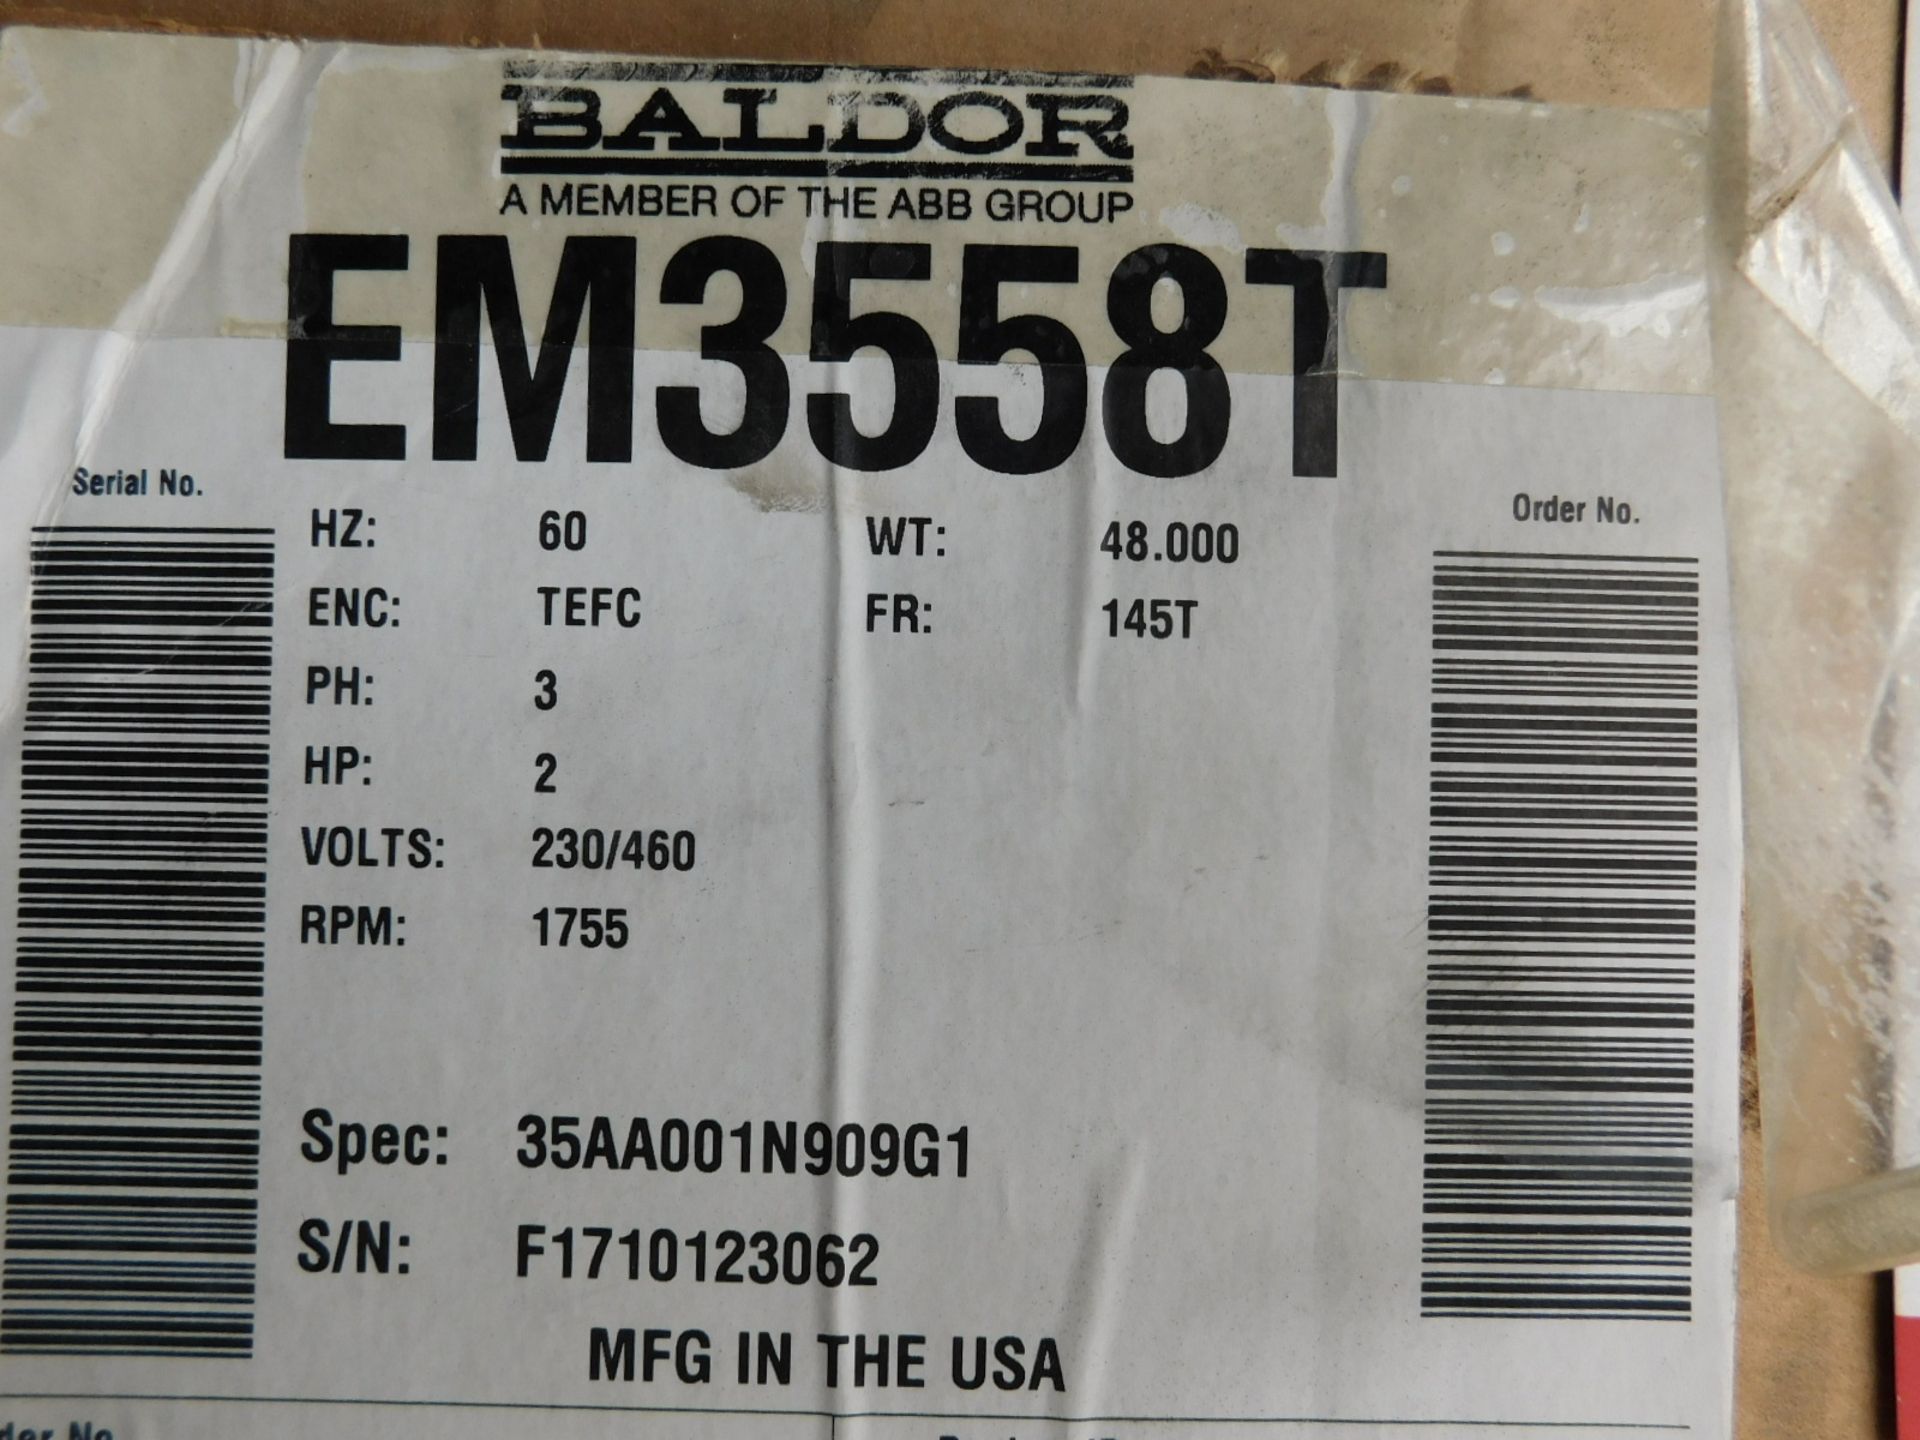 BALDOR EM3558T 2 HP MOTOR, 1755 RPM, 230/460V/3PH, S/N: N/A (DELAYED PICKUP - FEBRUARY 15, 2021)